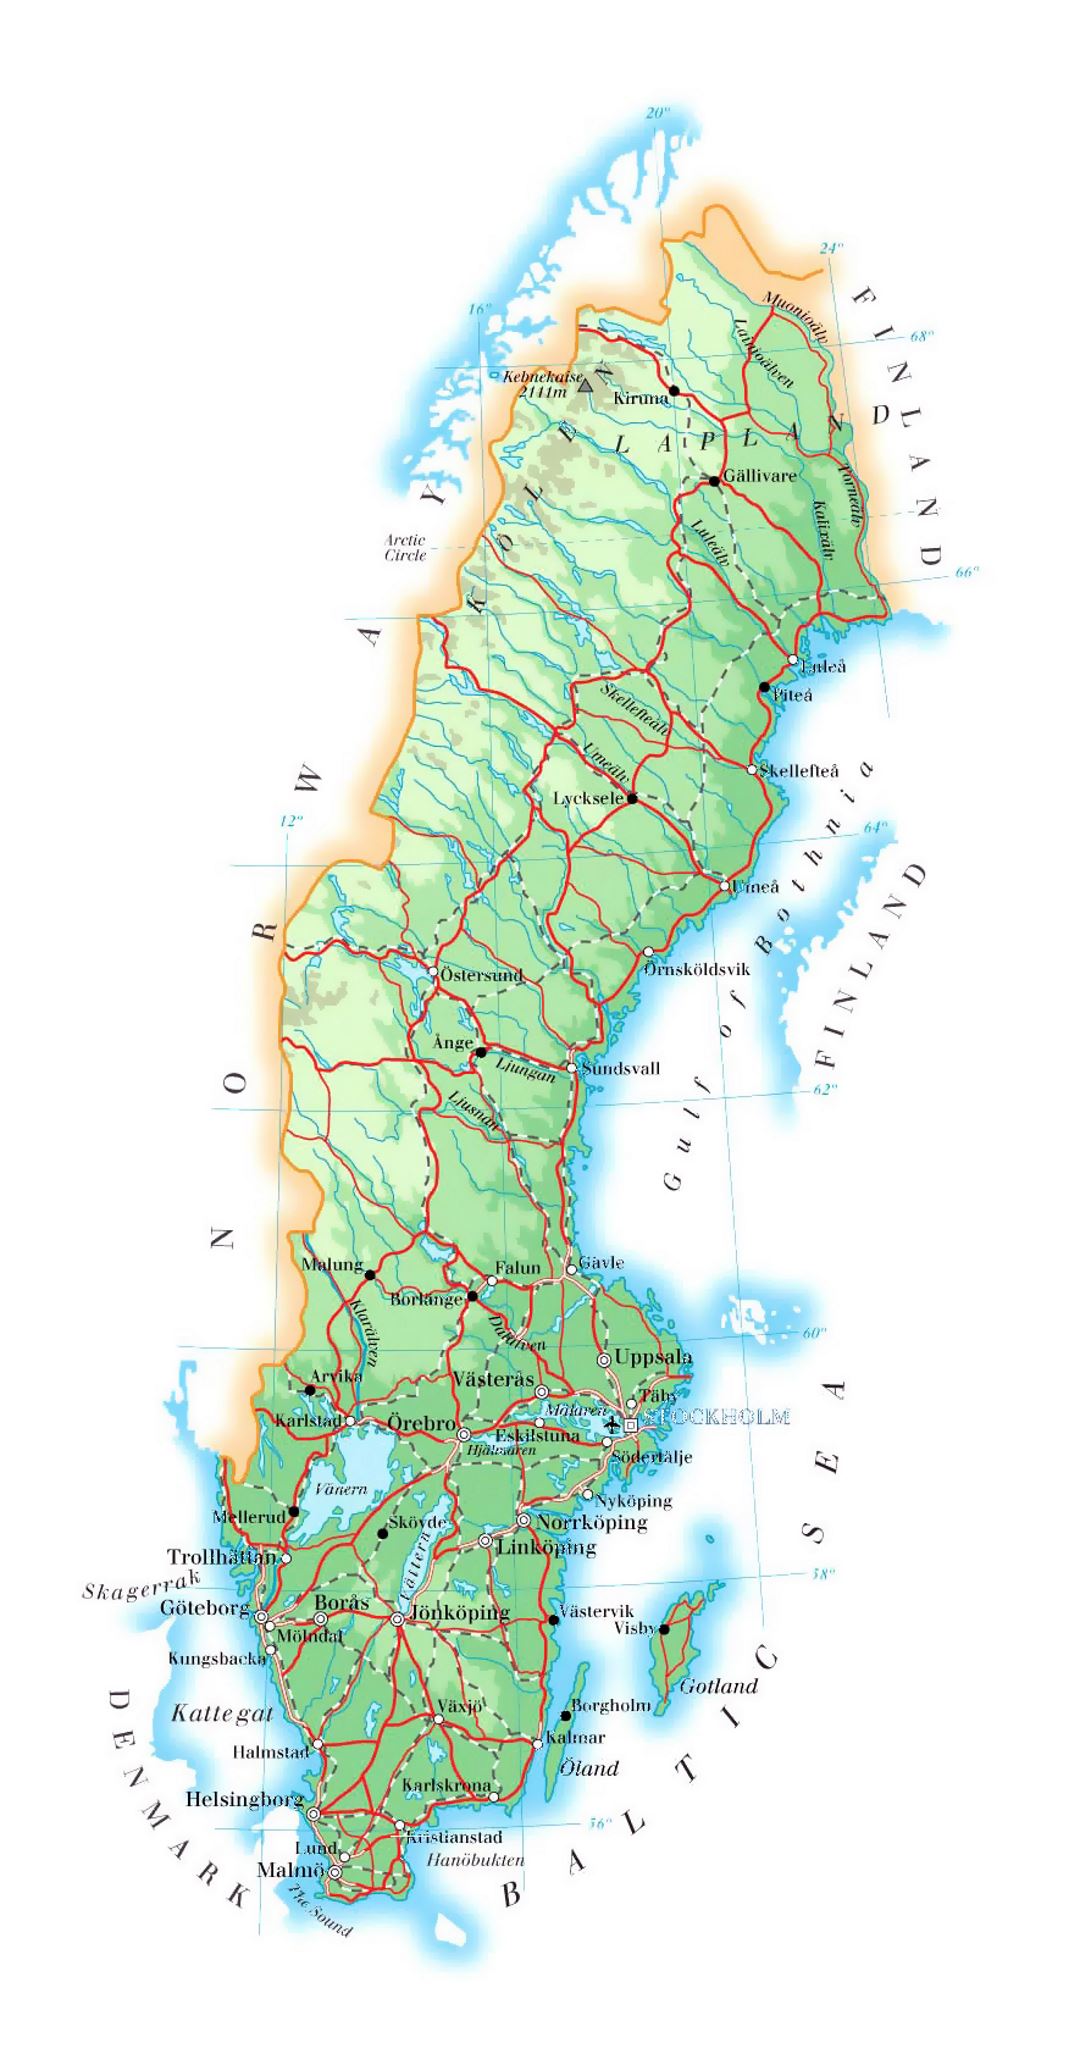 Detallado mapa de elevación de Suecia con carreteras, ciudades y aeropuertos